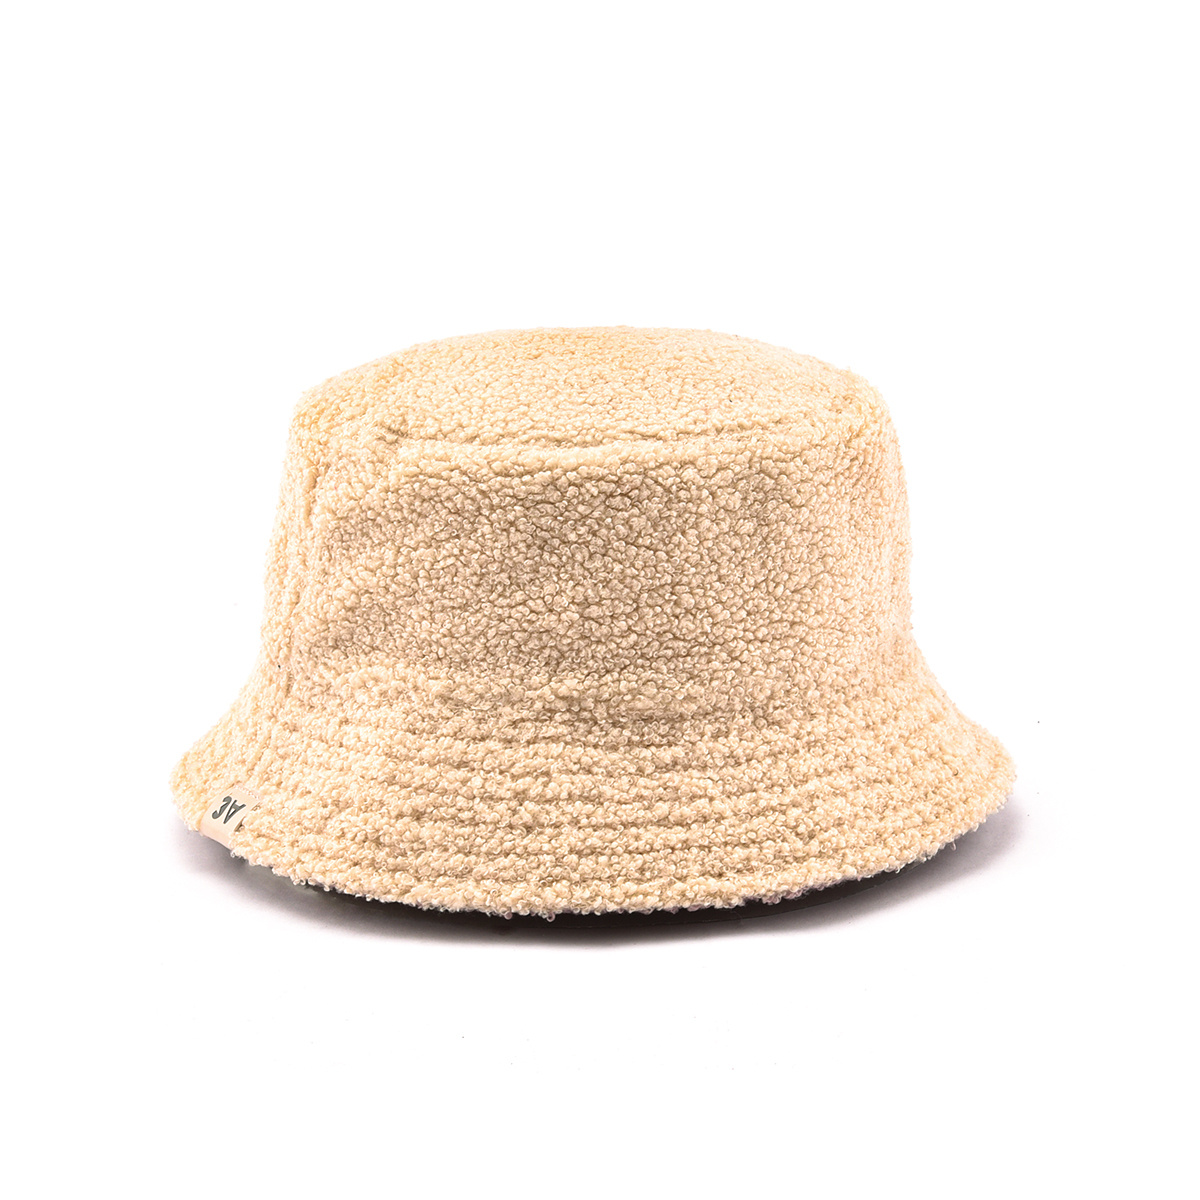 AungCrown warm faux fur plain color bucket hat for winter